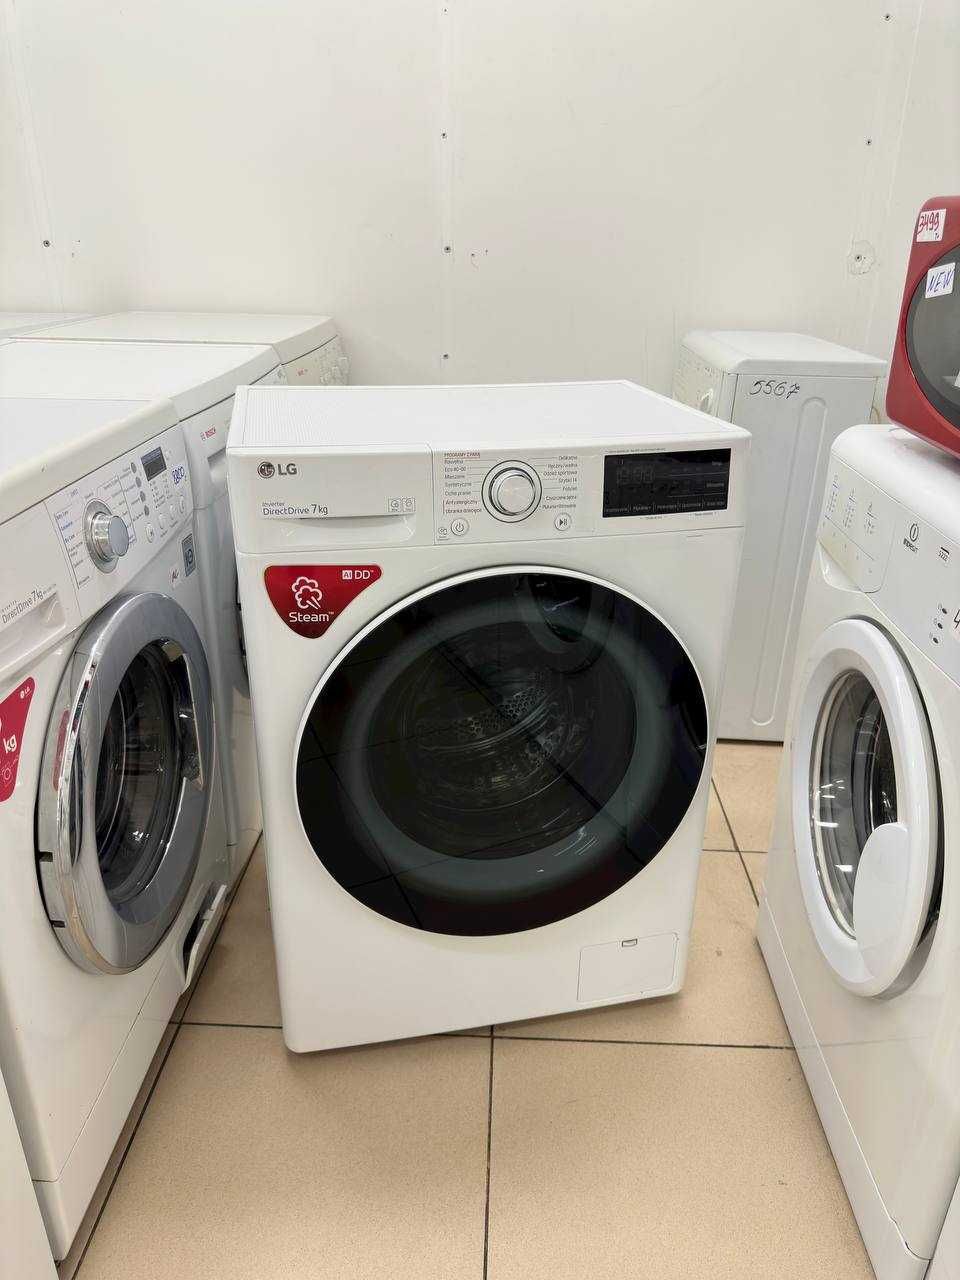 Надійна пральна машина AEG 8000S, 1-9 кг, склад-магазин техніки